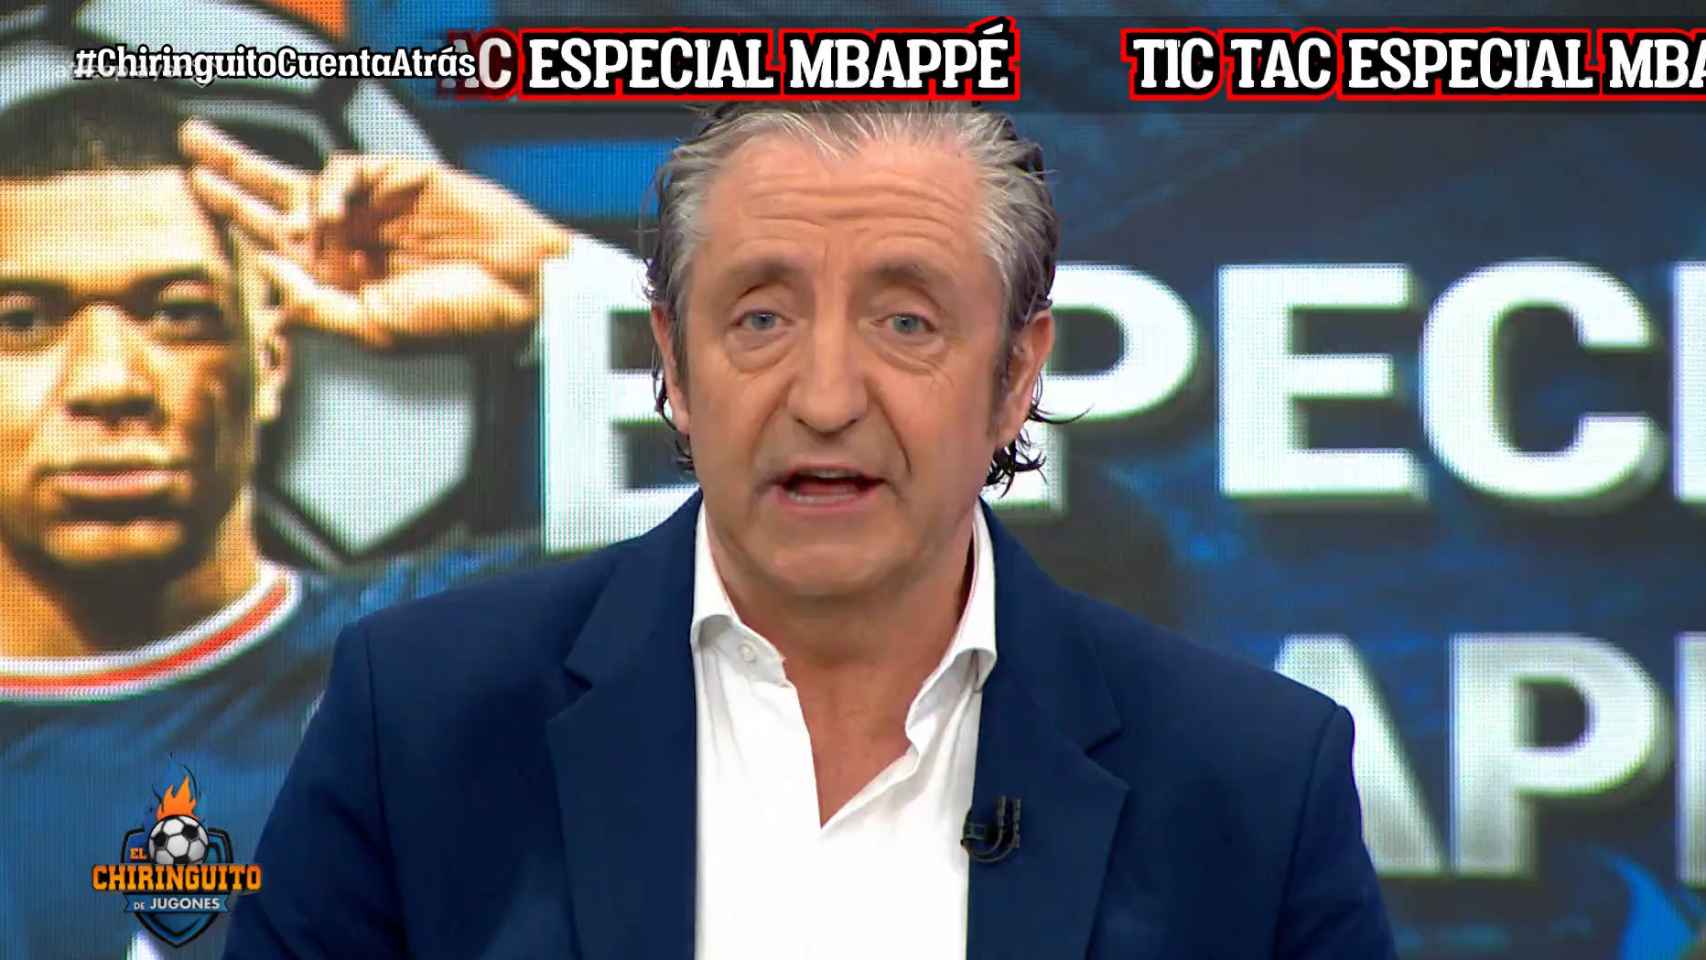 Un actor de 'Los Serrano' se cuela por sorpresa en el especial de 'El chiringuito' de Pedrerol sobre Mbappé